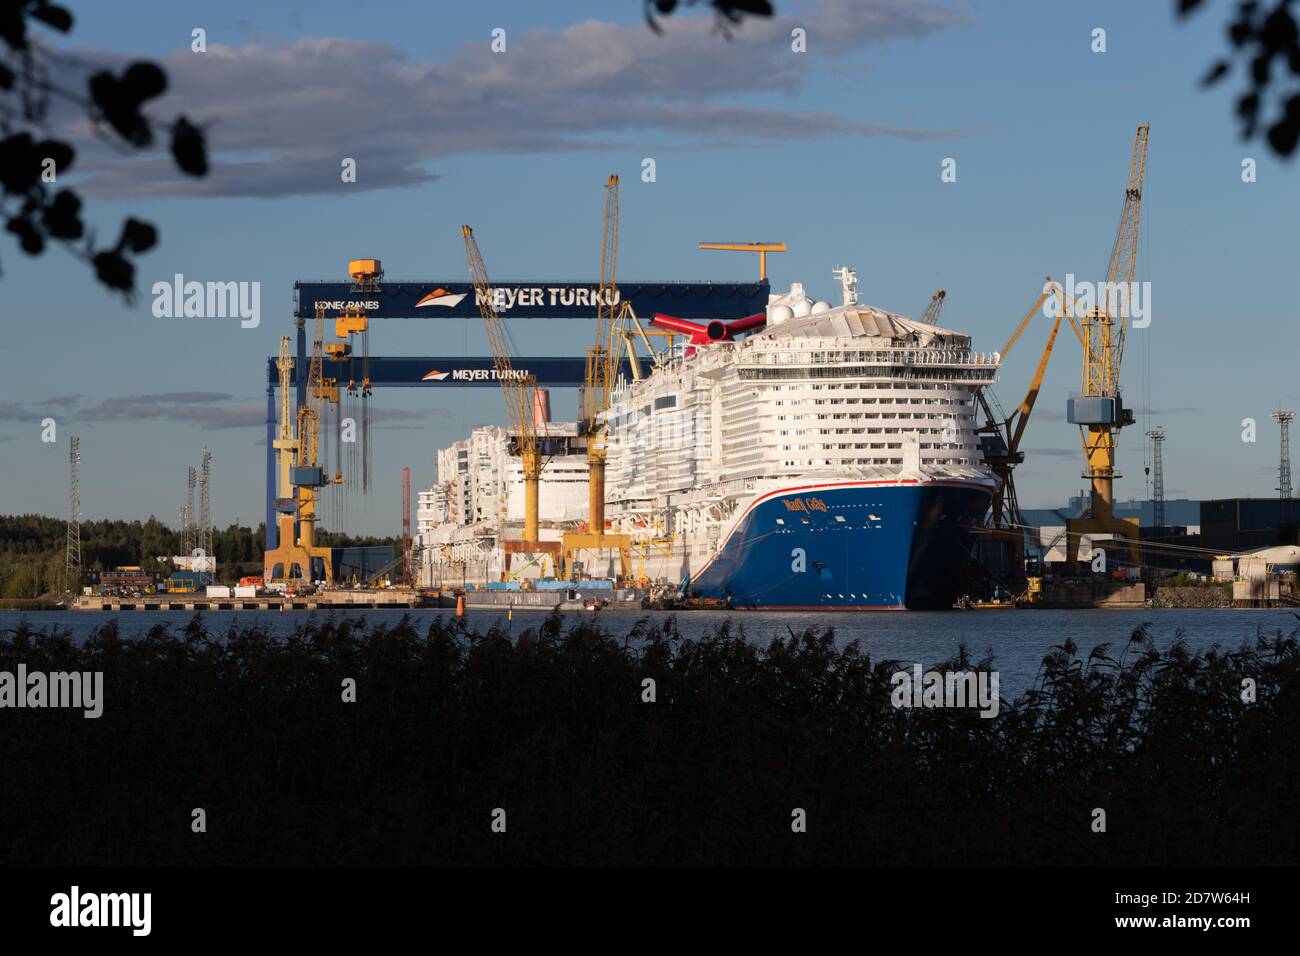 Carnival Cruise Lines neues Flaggschiff Mardi Gras wird bei der Meyer Turku Shipyard in Turku, Finnland, gebaut. Hinter dem Schwesterschiff Costa Toscana. Stockfoto